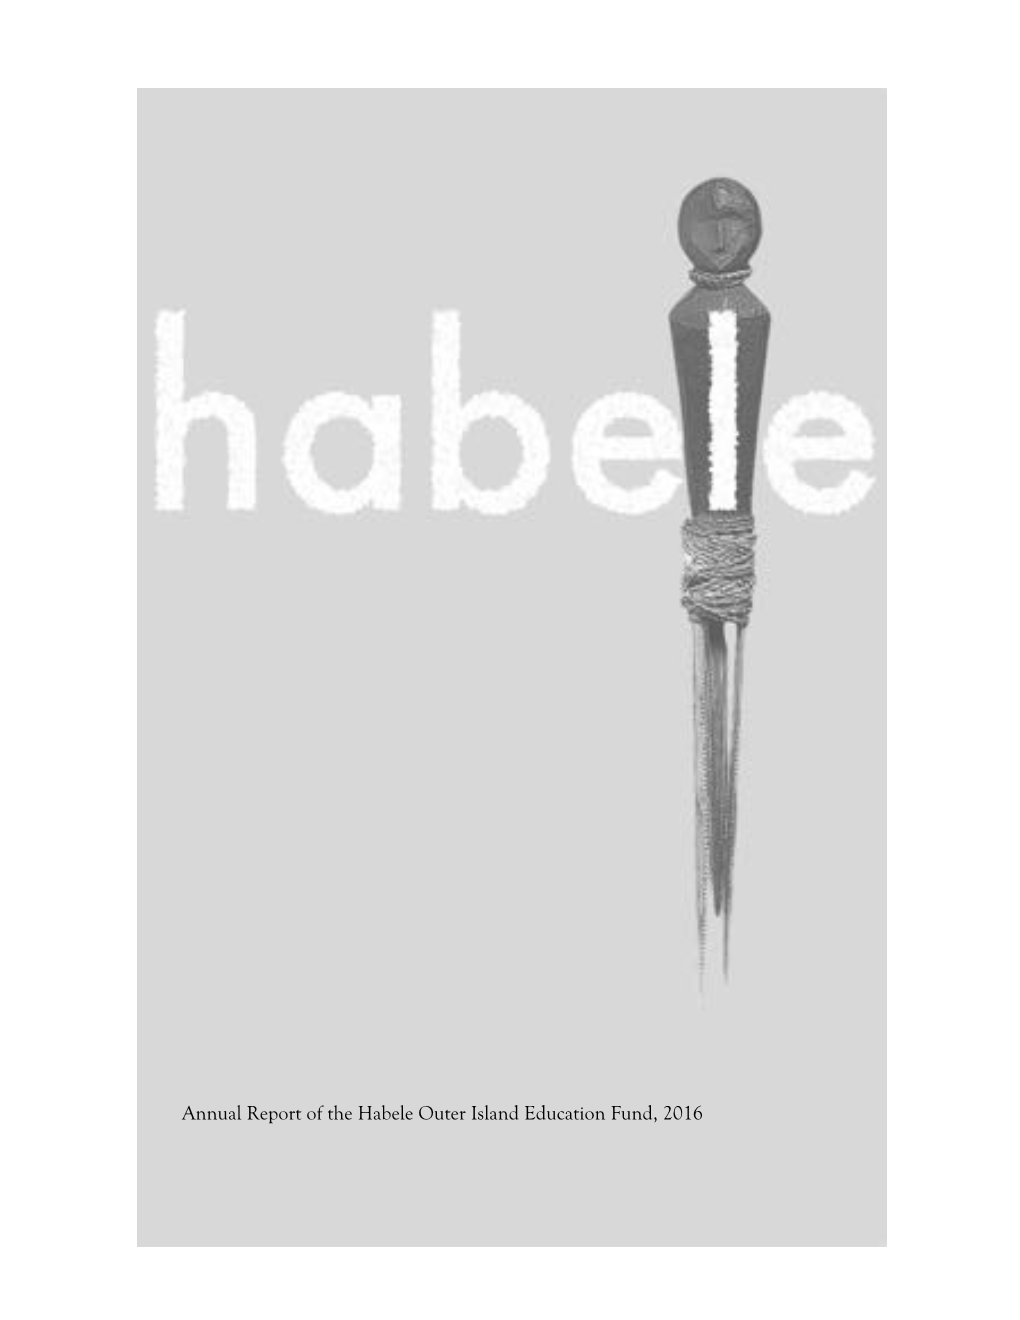 HOIEF Annual Report 2016